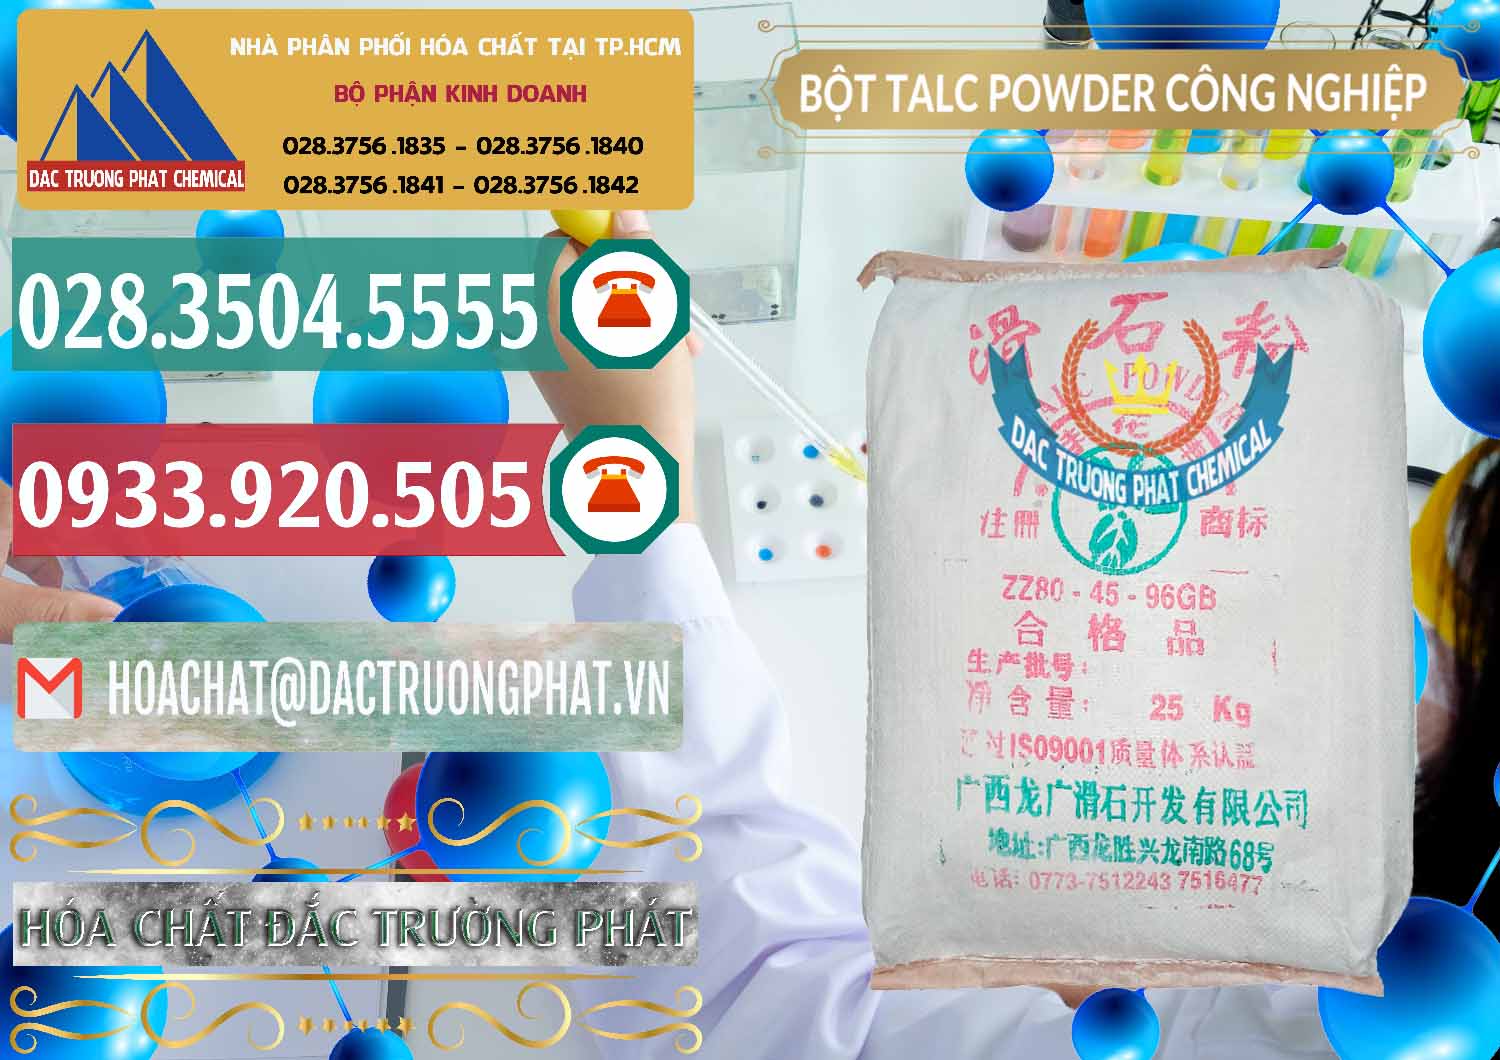 Công ty bán - cung cấp Bột Talc Powder Công Nghiệp Trung Quốc China - 0037 - Công ty nhập khẩu và cung cấp hóa chất tại TP.HCM - muabanhoachat.vn